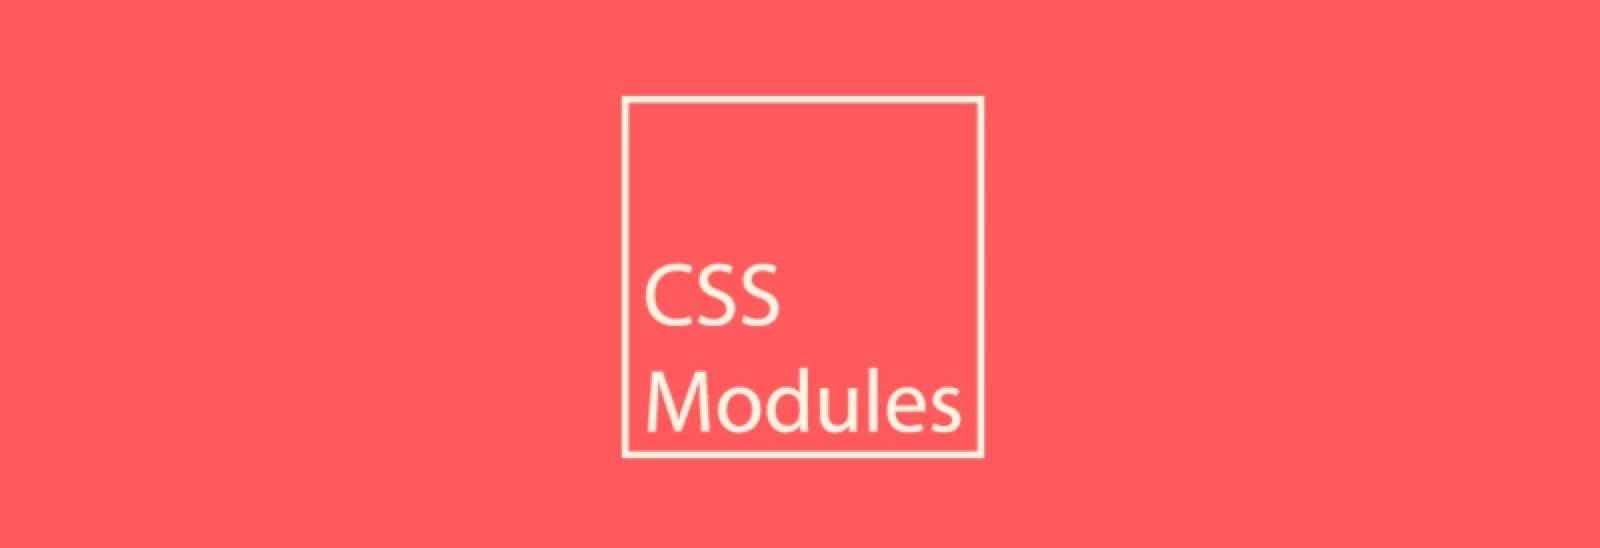 简单易懂的CSS Modules